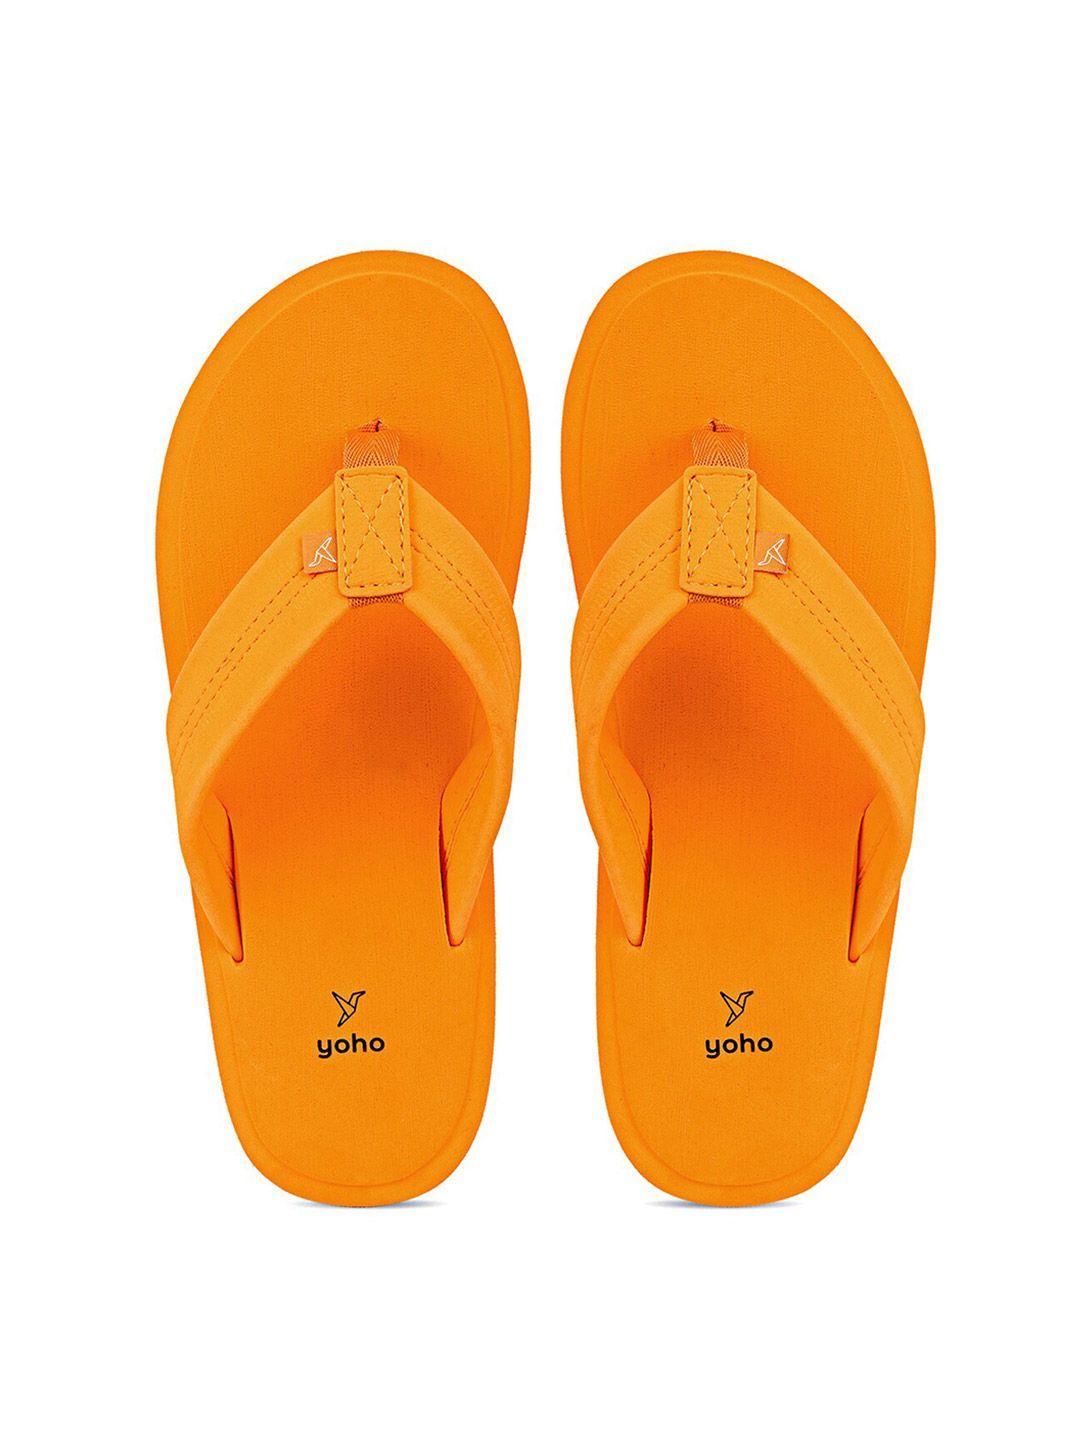 yoho-men-yellow-rubber-thong-flip-flops